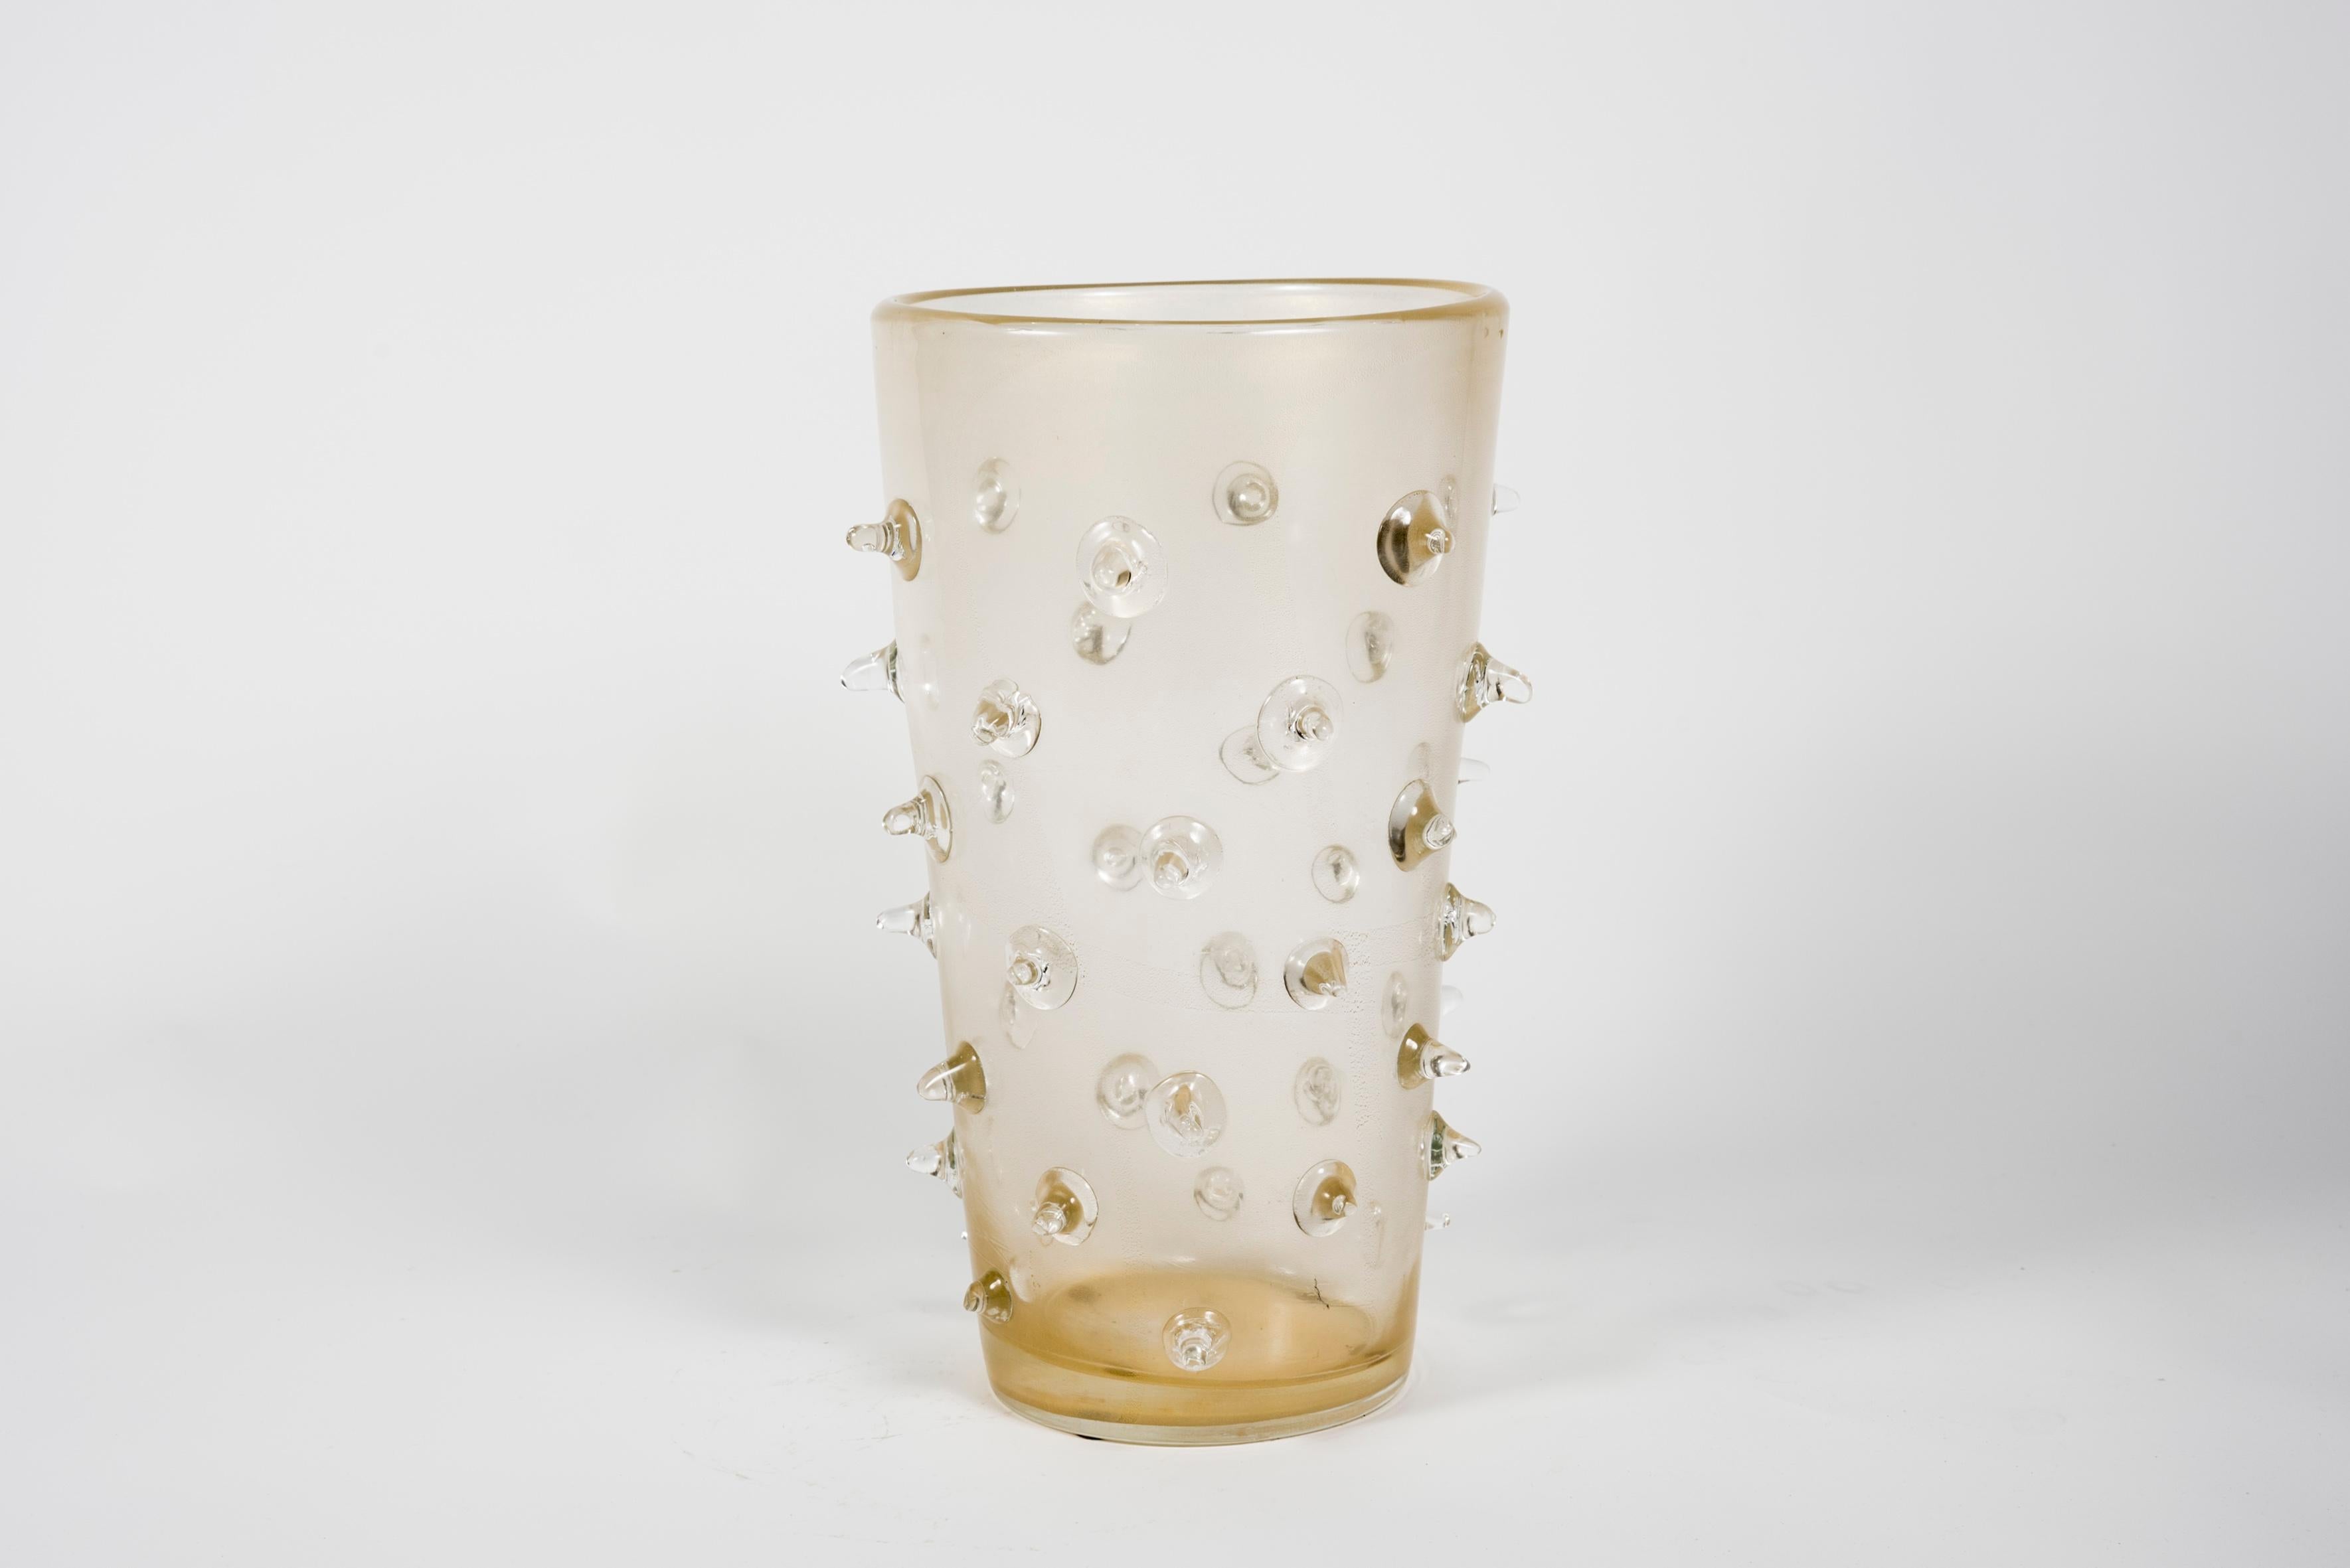 Très beaux vases en verre de Murano.
Signé
 